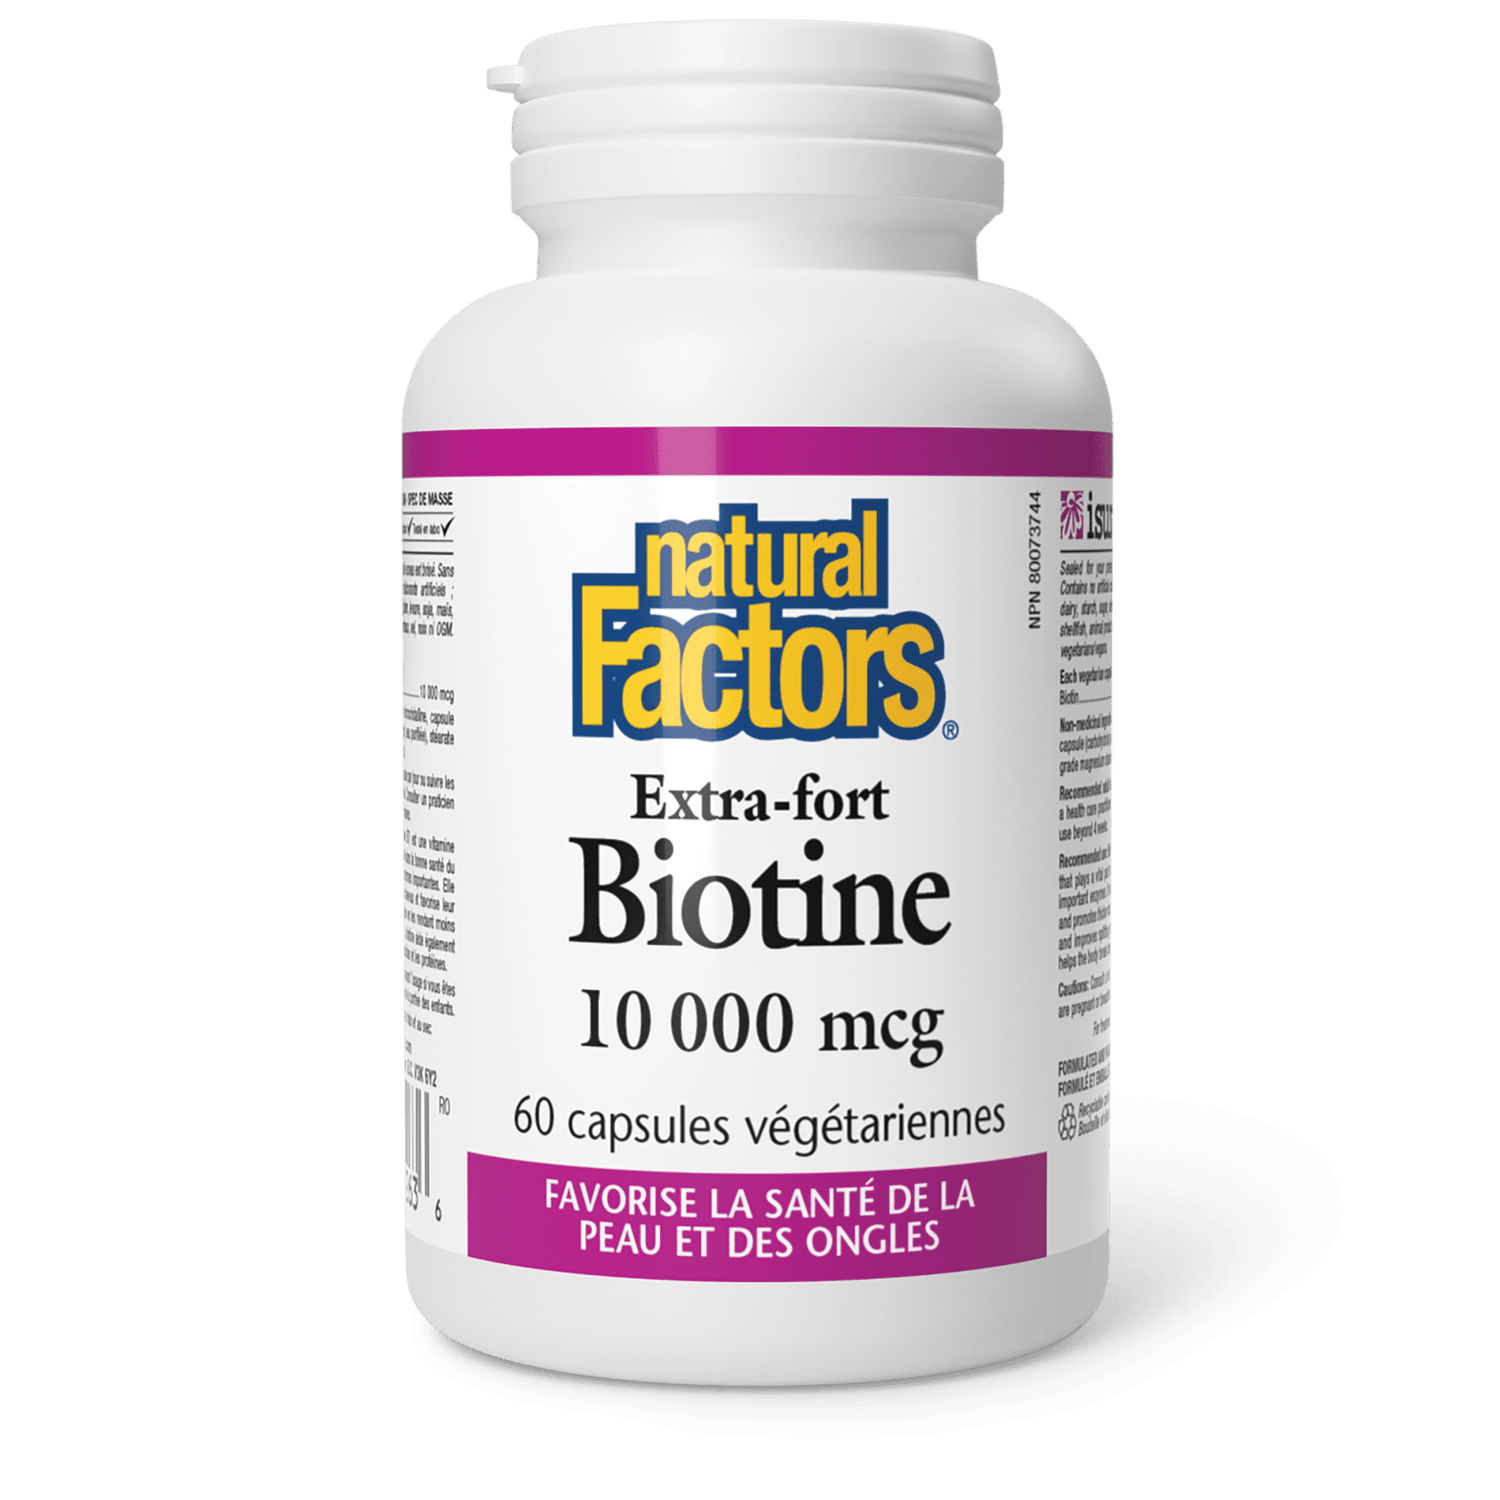 Biotine Extra-fort 10 000 mcg, Natural Factors|v|image|1263